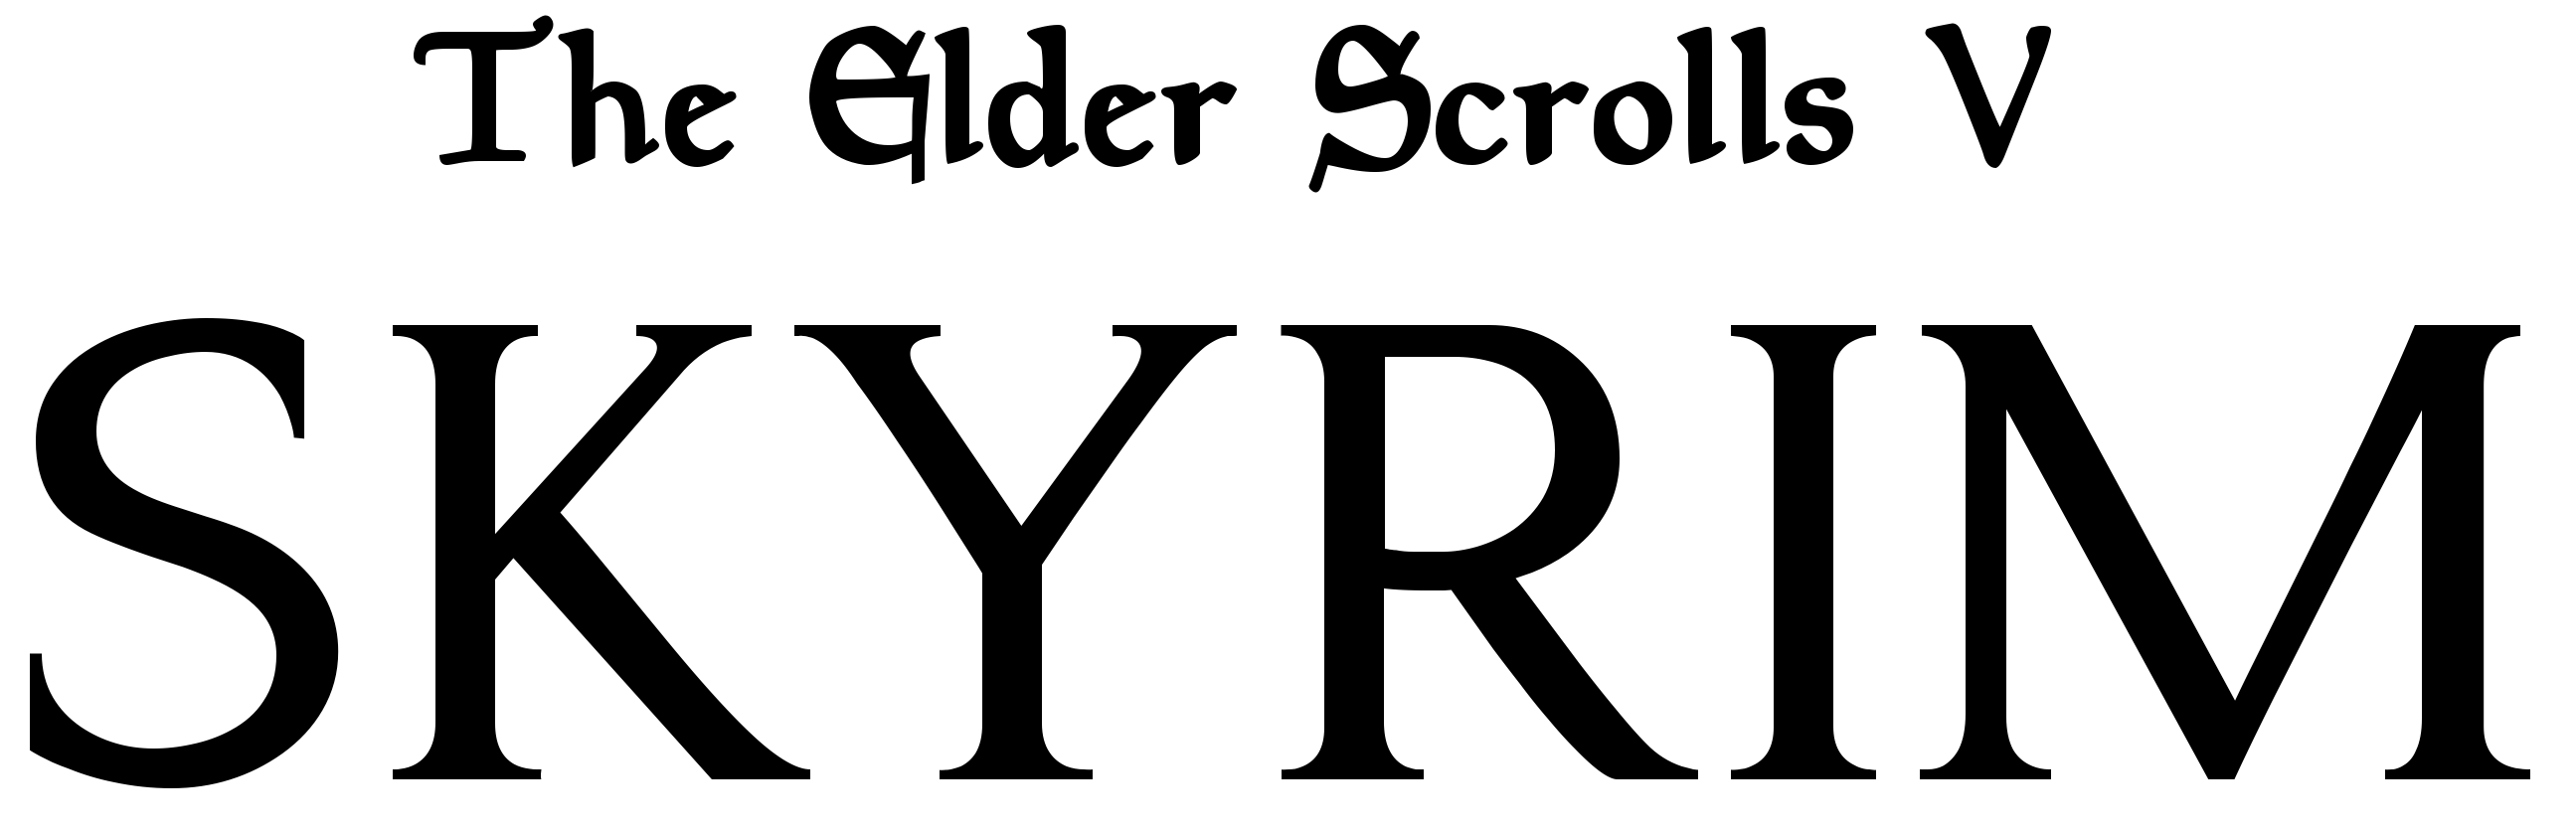 the elder scrolls v skyrim logo download vector the elder scrolls v skyrim logo